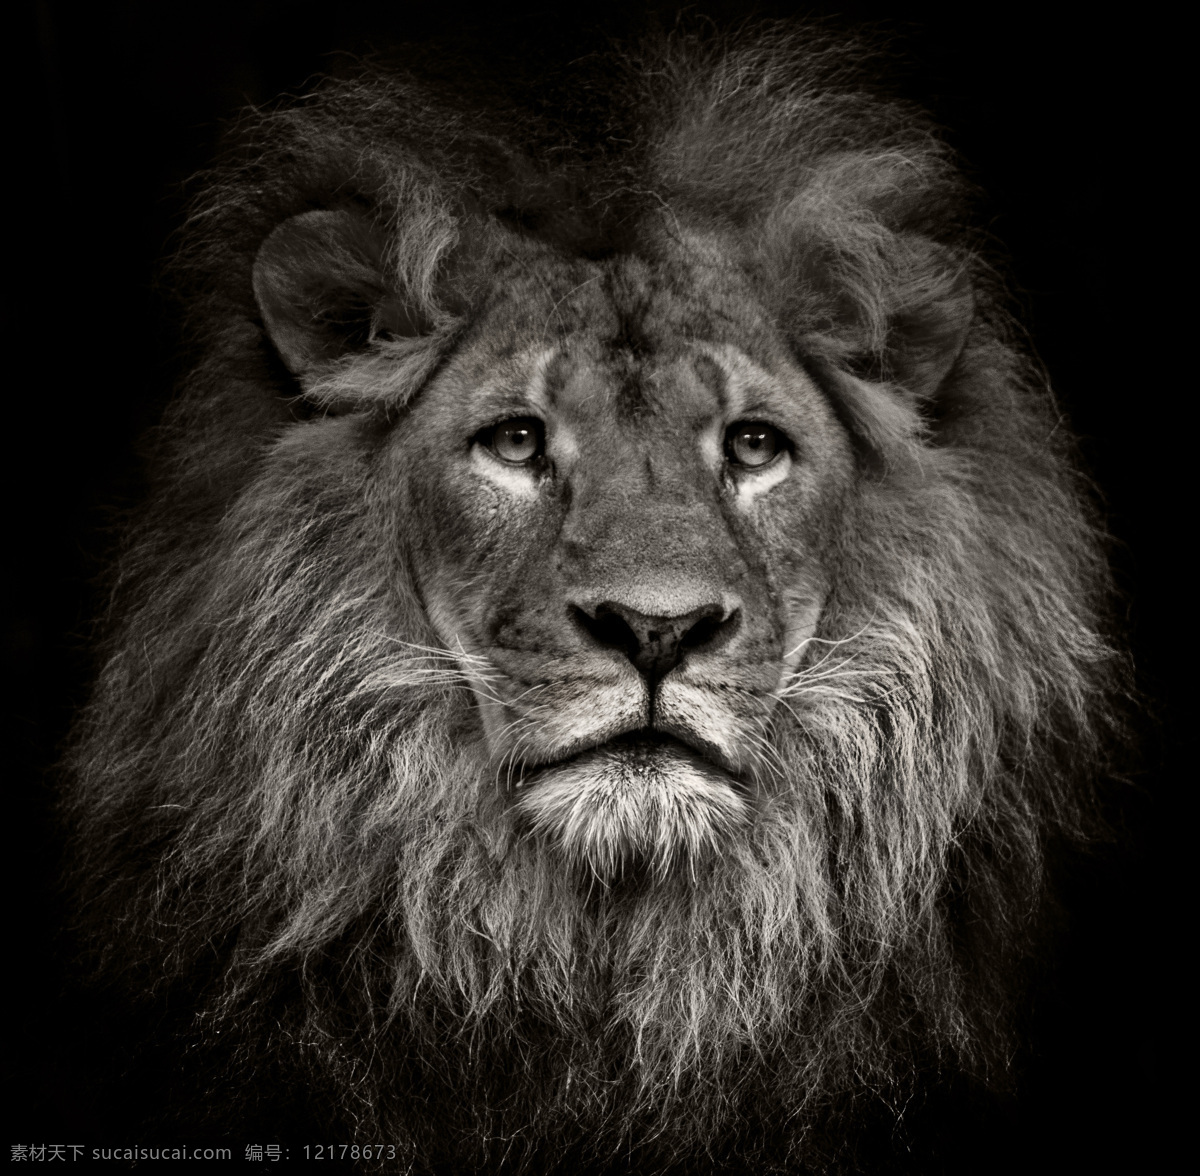 非洲雄狮 雄狮 狮子头 狮子摄影 狮子特写 狮子 咆哮的狮子 怒吼的狮子 咆哮 怒吼 动物 野生动物 生物世界